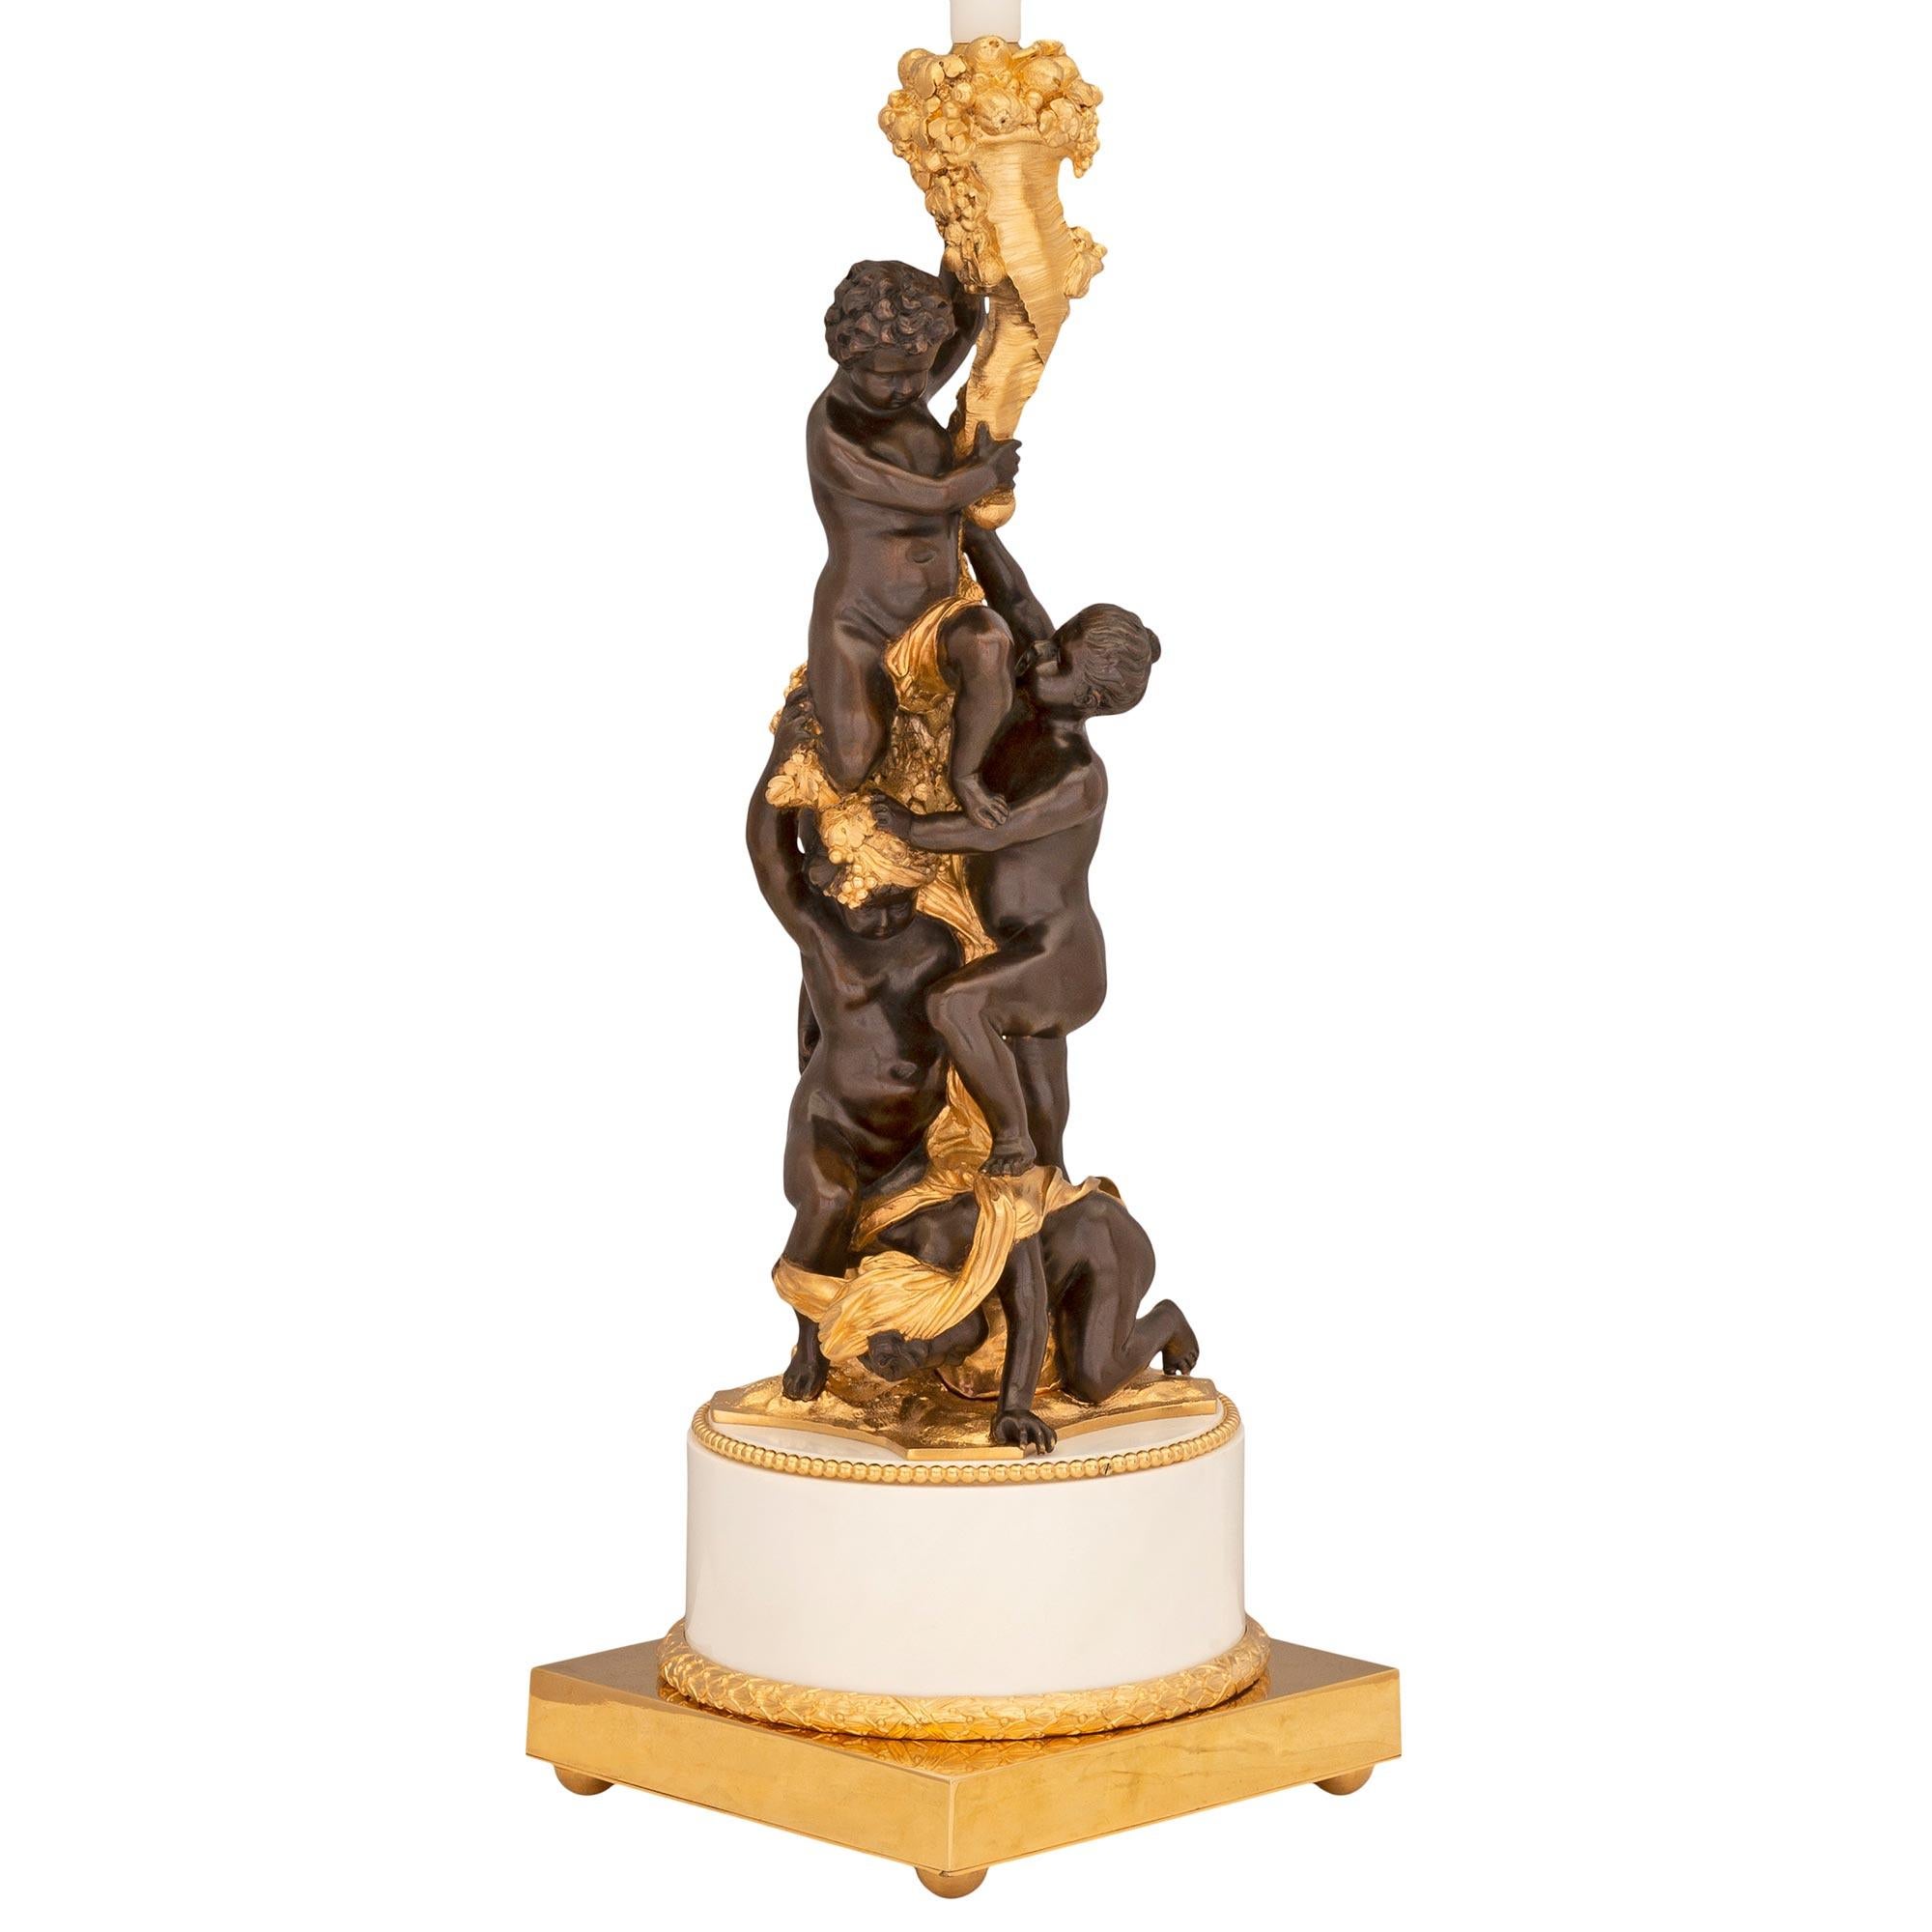 Une belle lampe française de haute qualité du 19ème siècle, de style Louis XVI, en bronze patiné, bronze doré et marbre blanc de Carrare, vendue par Caldwell de New York. La lampe est surélevée par une base carrée en bronze doré avec des pieds en